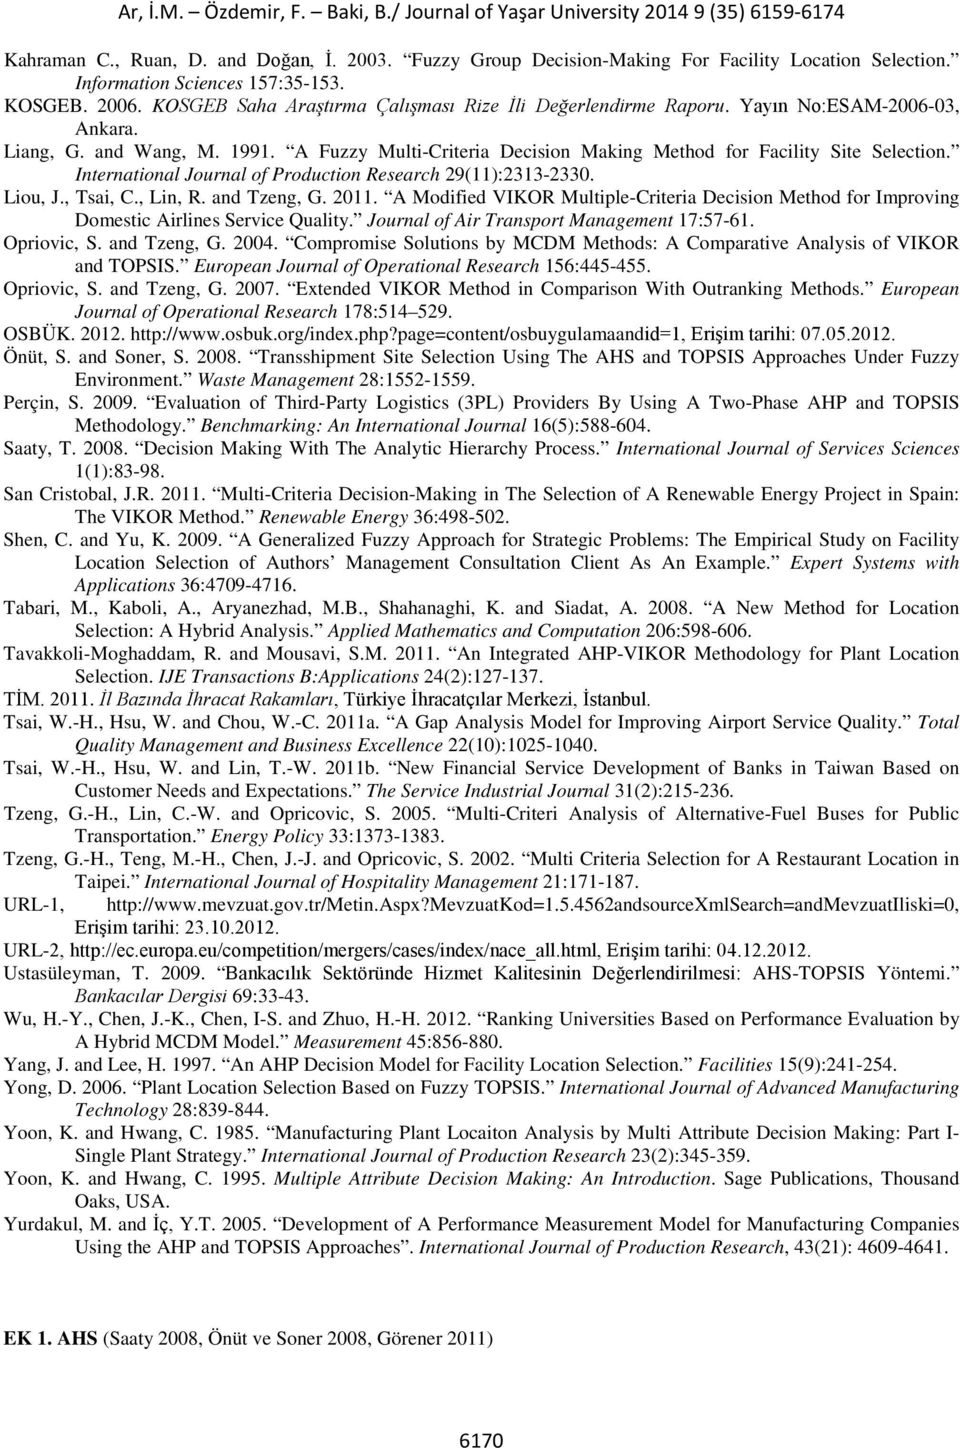 International Journal of Production Research 29(11):2313-2330. Liou, J., Tsai, C., Lin, R. and Tzeng, G. 2011.